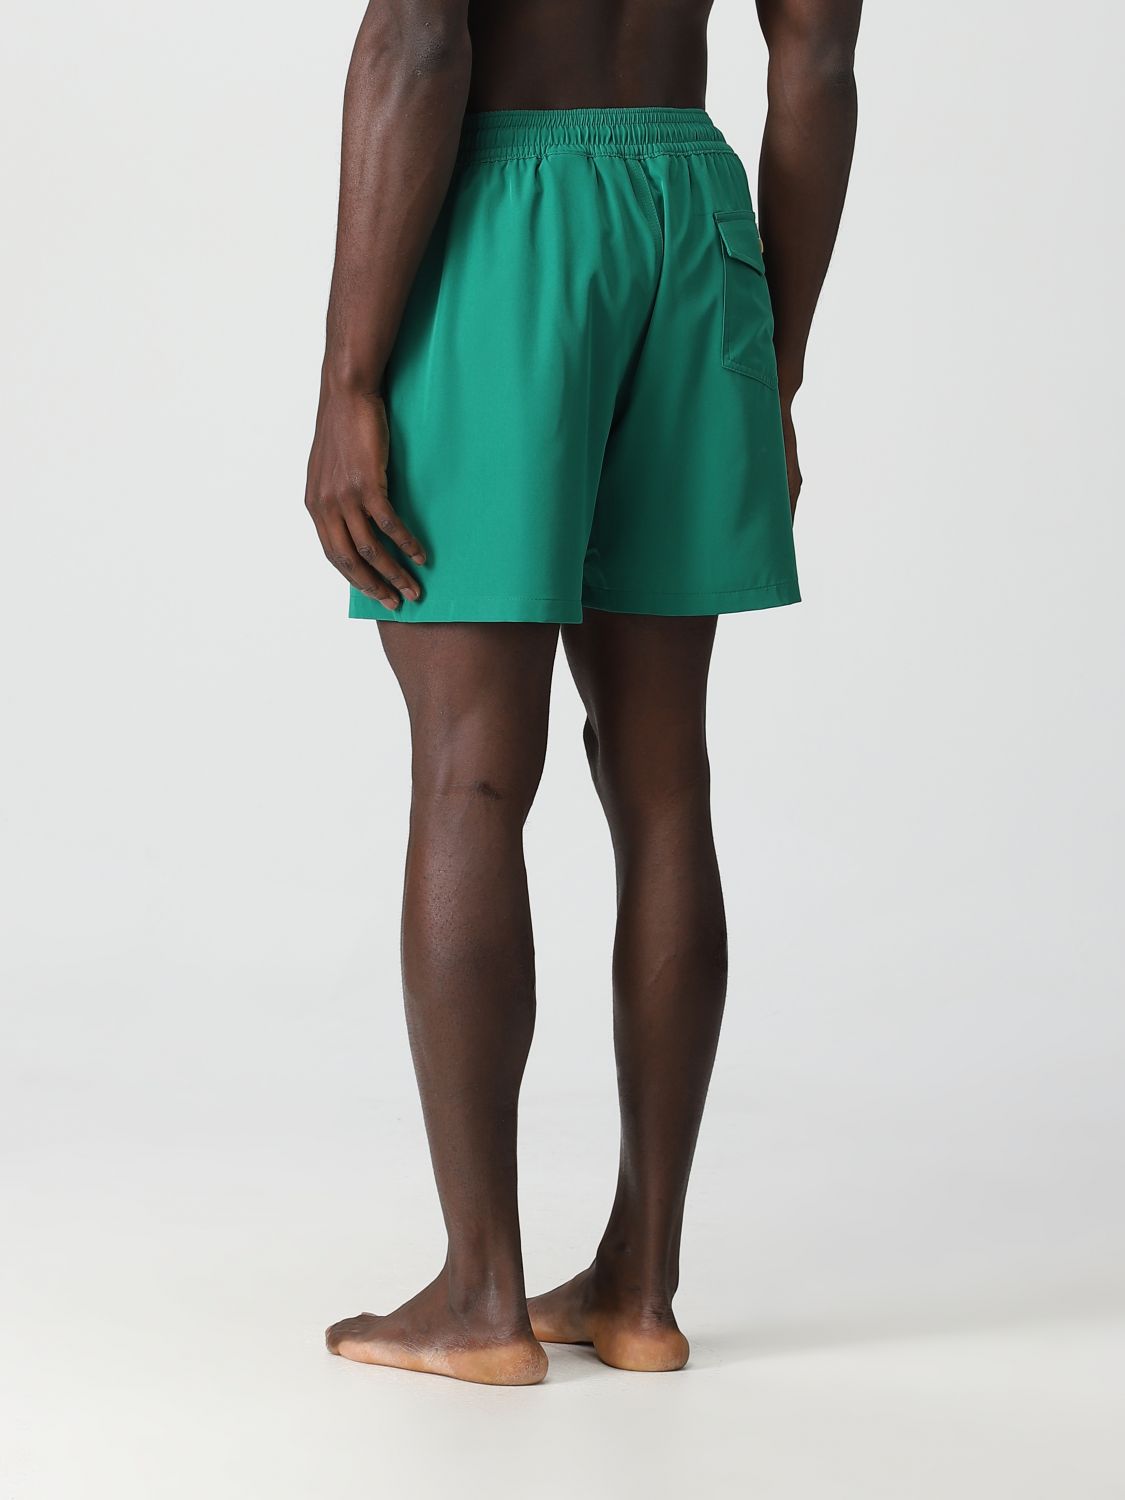 POLO RALPH LAUREN: swimsuit for man - Grass Green | Polo Ralph Lauren ...